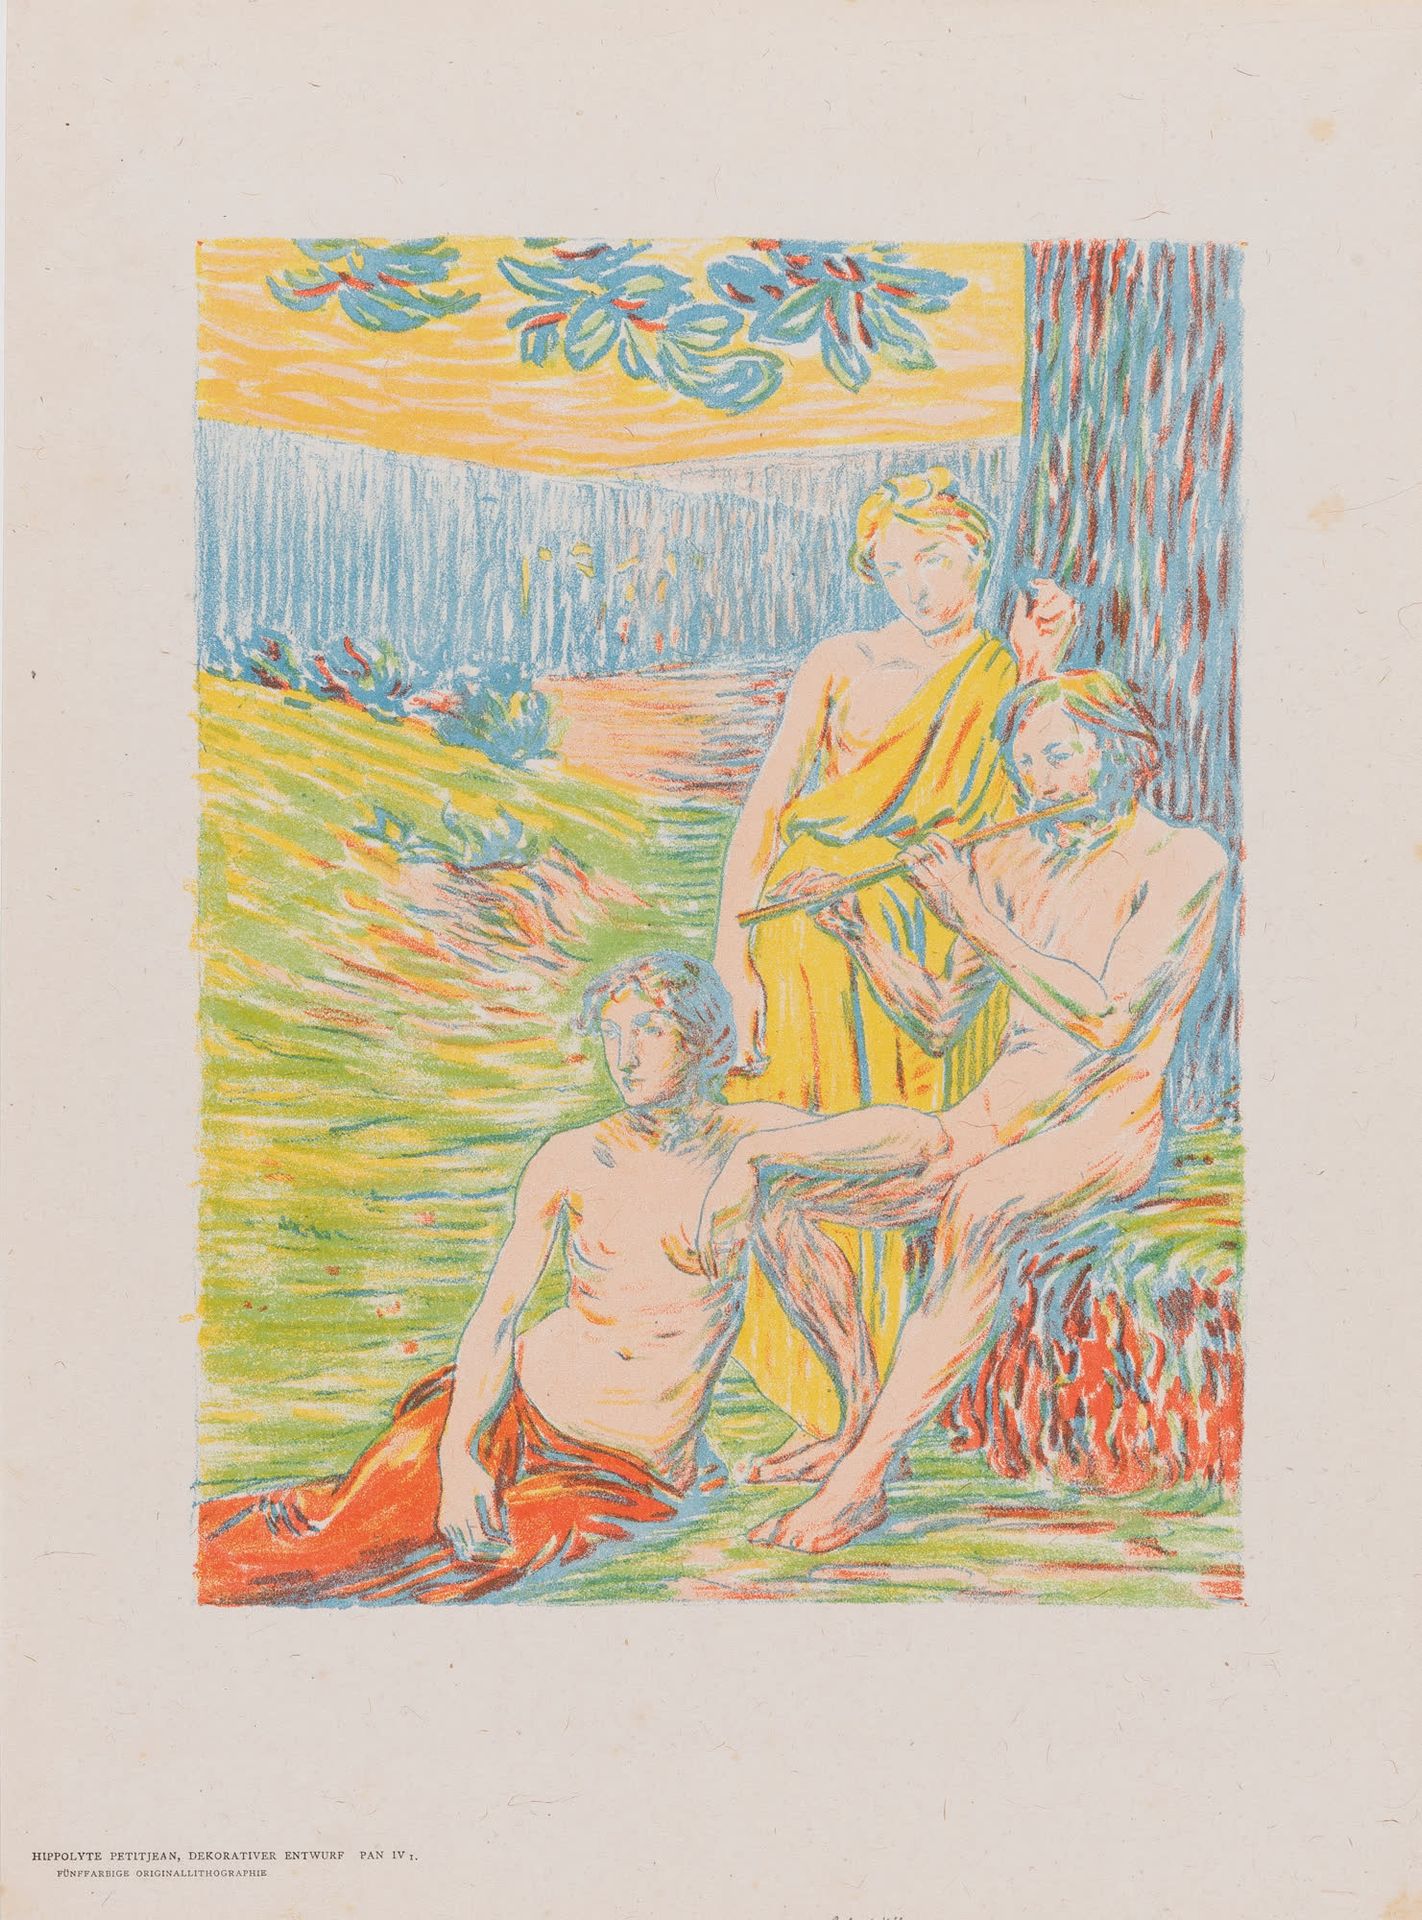 Hippolyte PETITJEAN (1854-1929) Il dio Pan, 1895.
Litografia a colori.
Copia non&hellip;